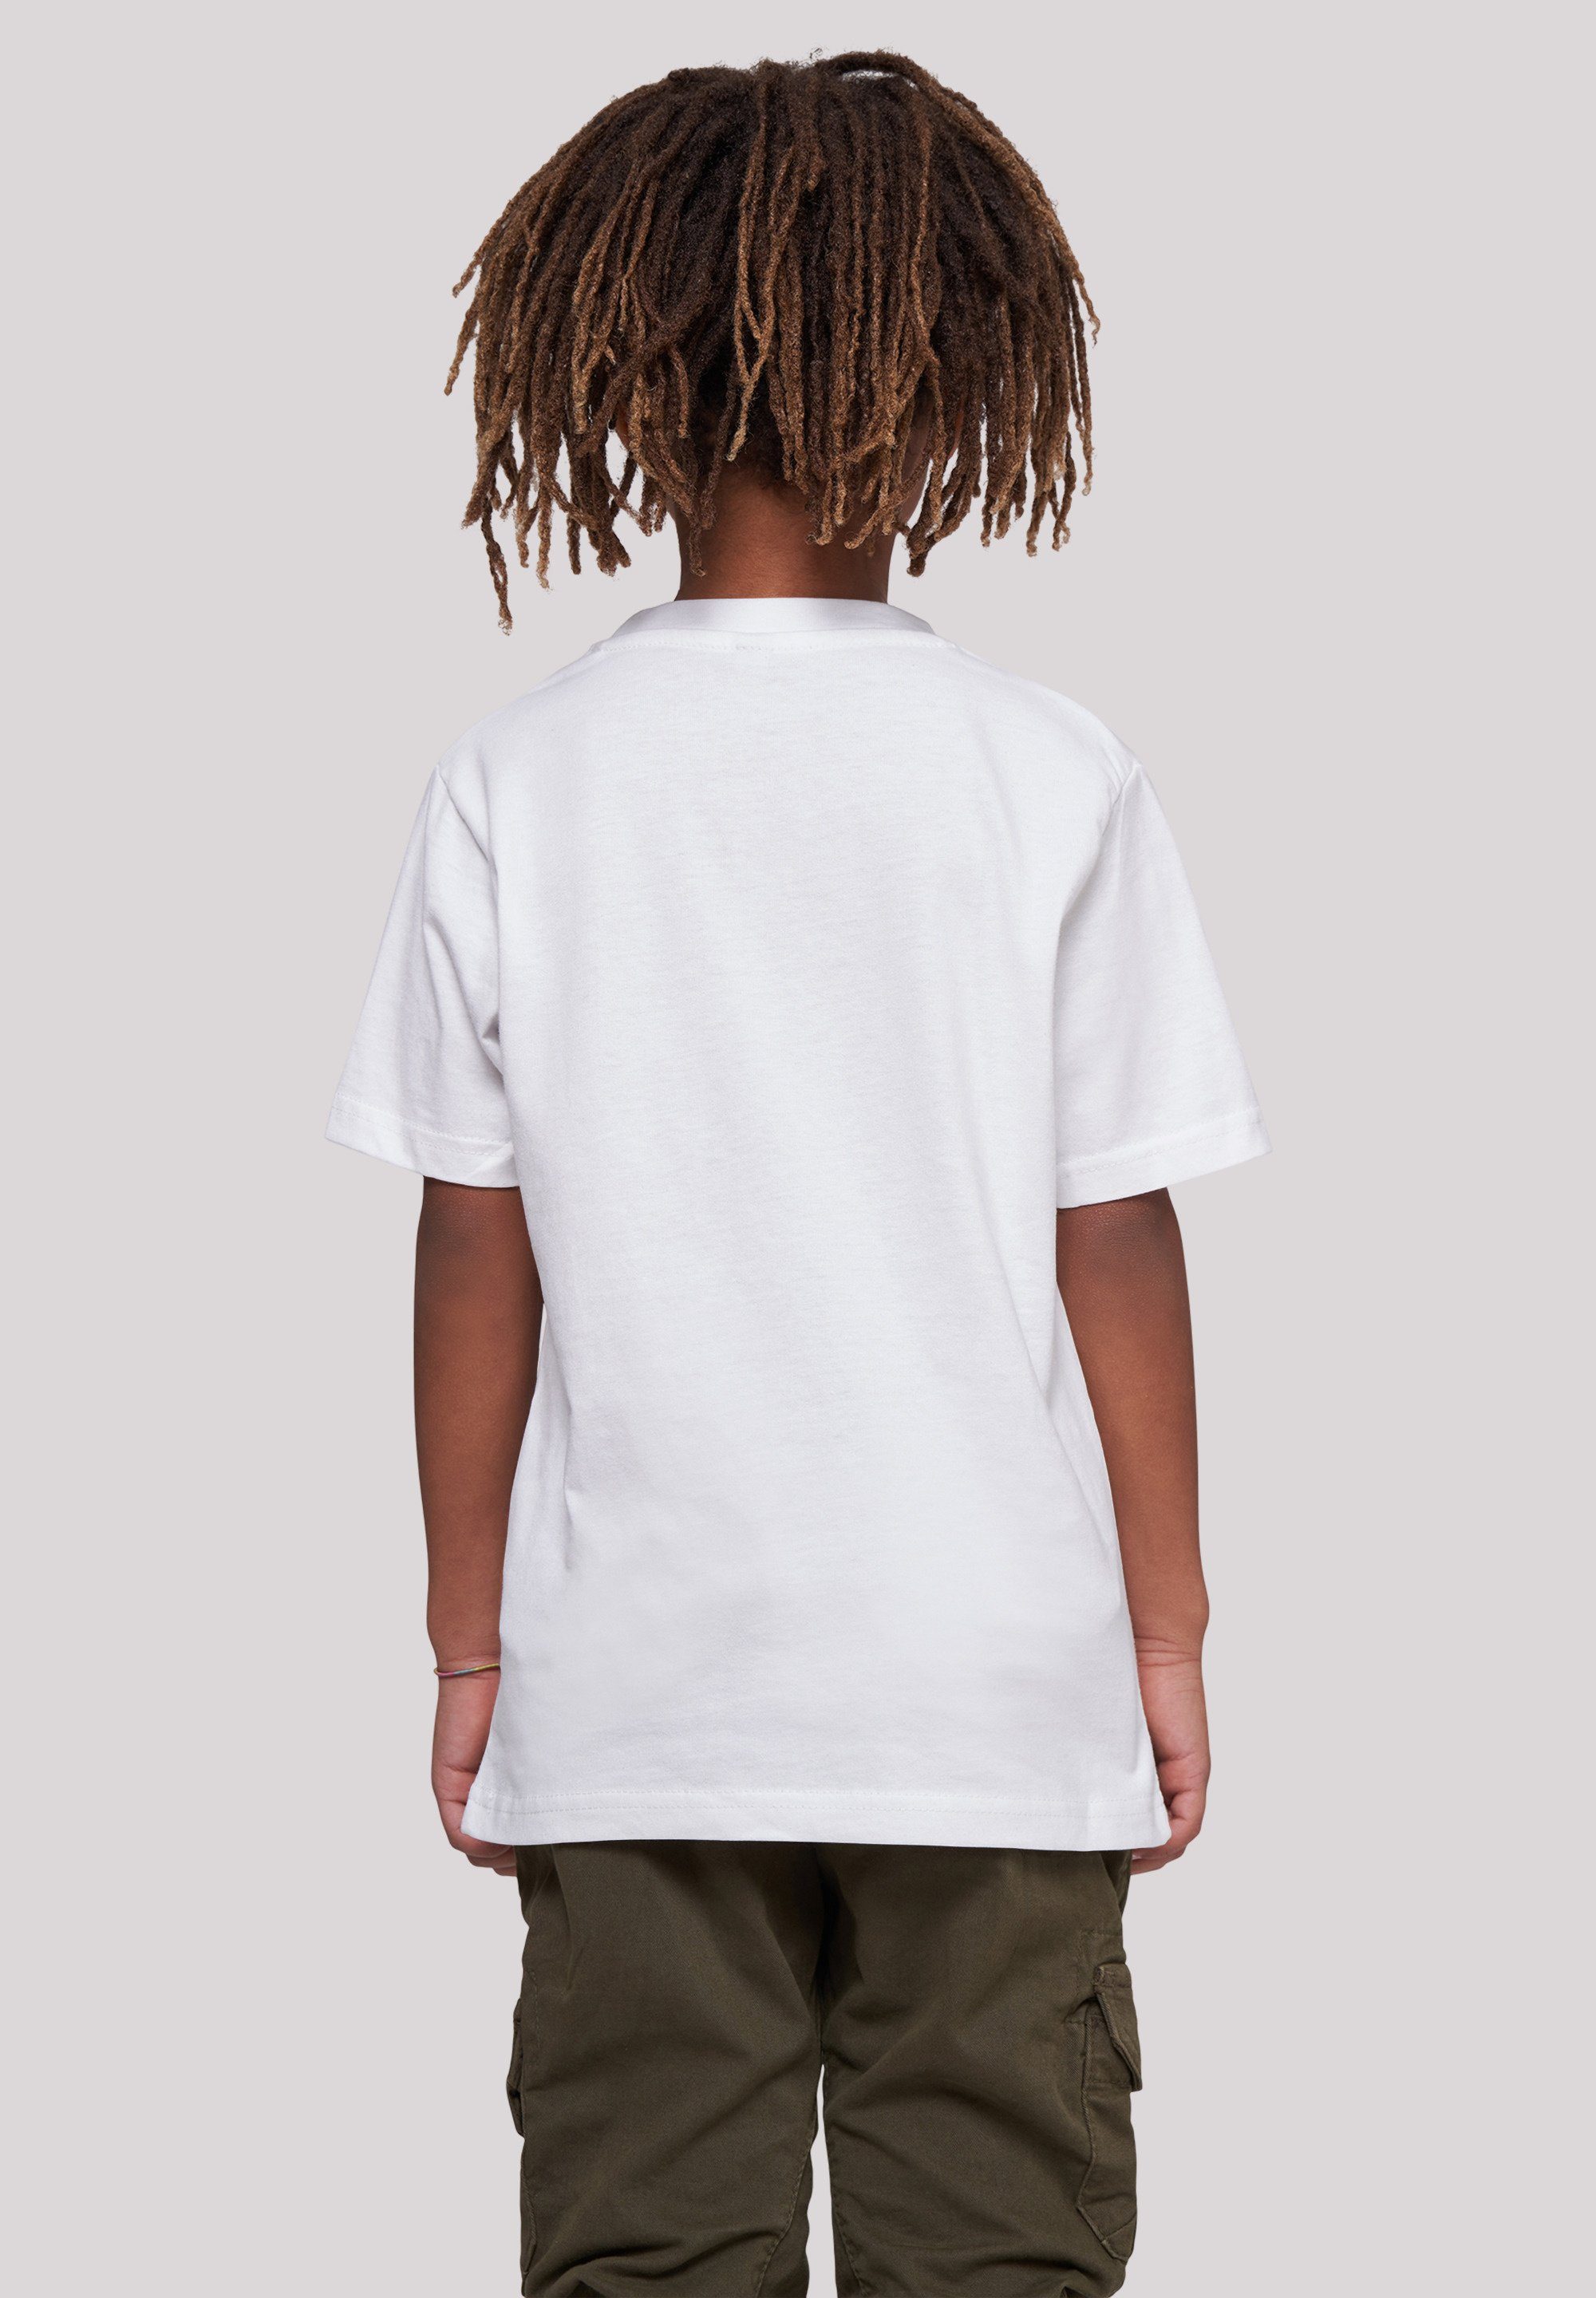 T-Shirt Unisex Bambi F4NT4STIC Kinder,Premium Mood weiß Disney Merch,Jungen,Mädchen,Bedruckt